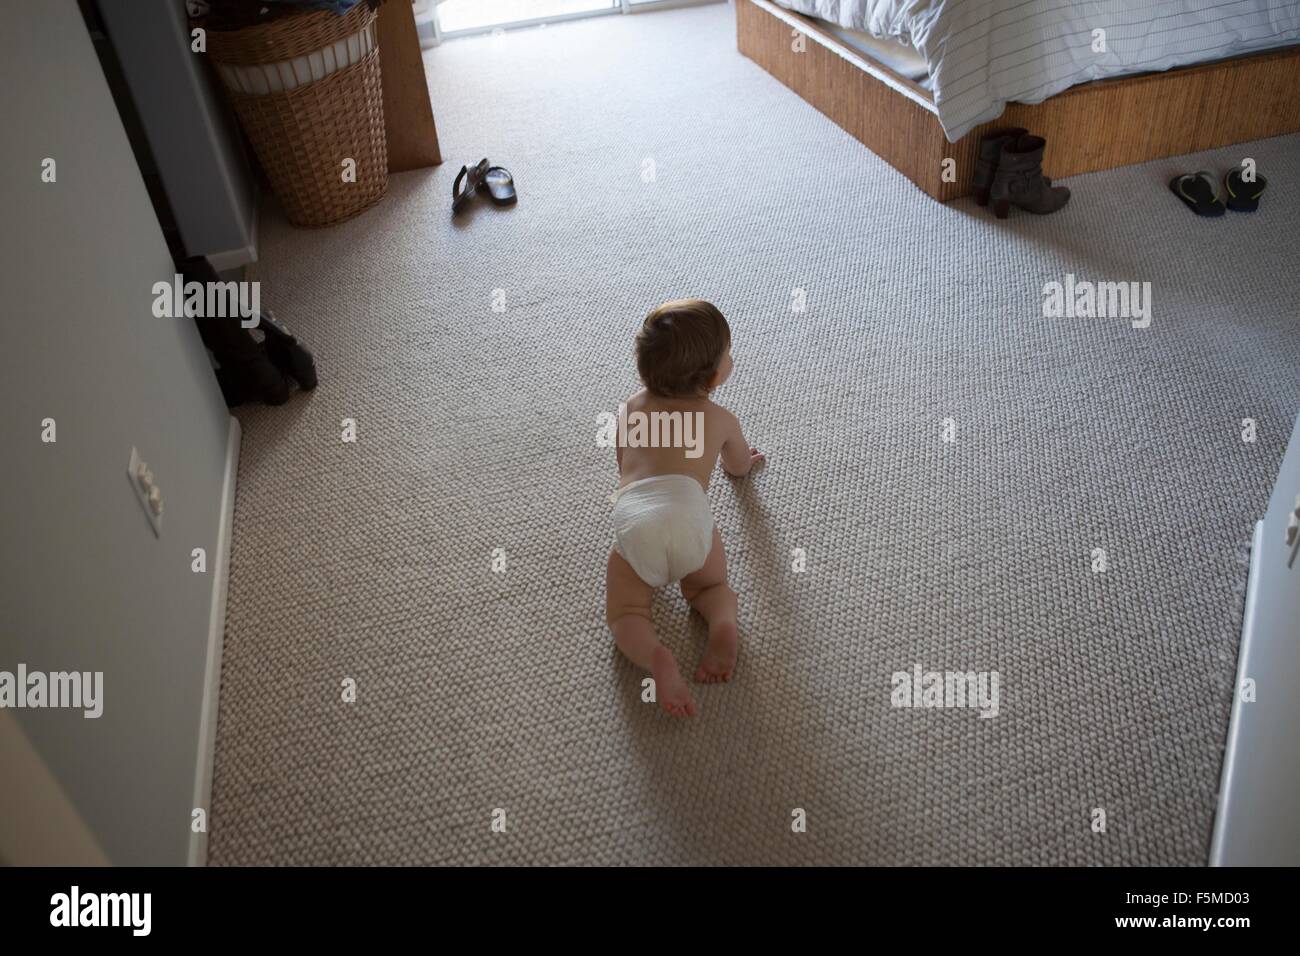 Hohen Winkel Rückansicht des jungen tragen Windel krabbeln auf Teppich im Schlafzimmer Stockfoto